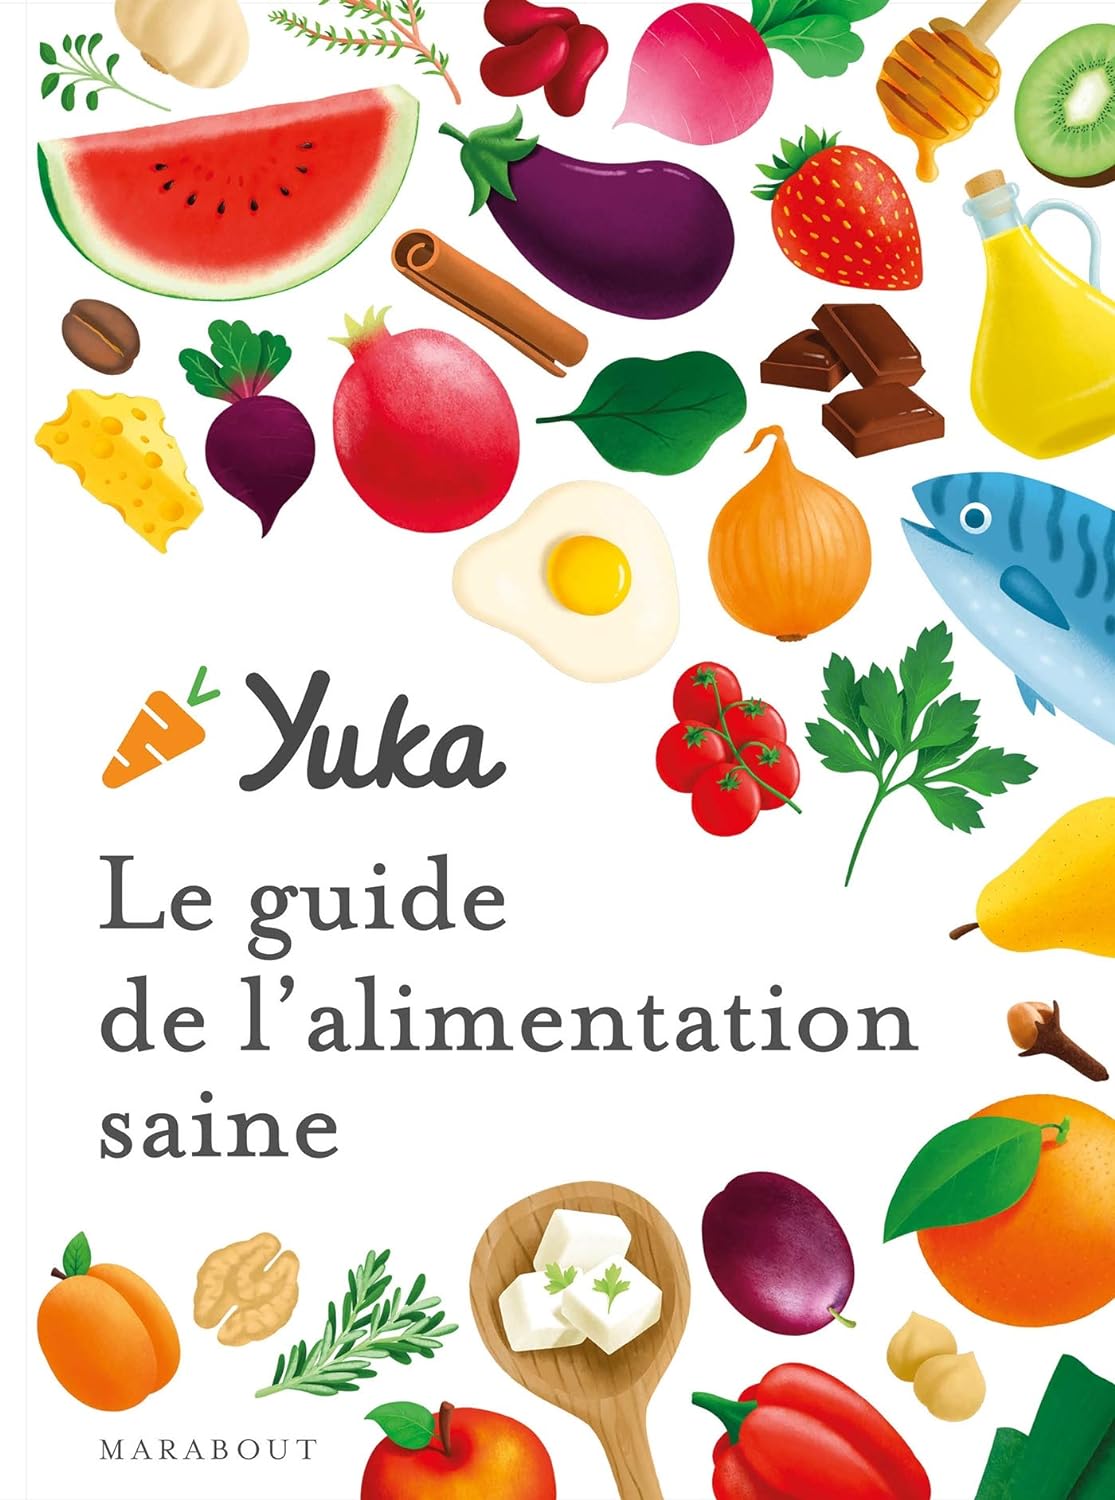 Le guide Yuka pour une alimentation saine : principes, recettes et astuces pour une santé optimale